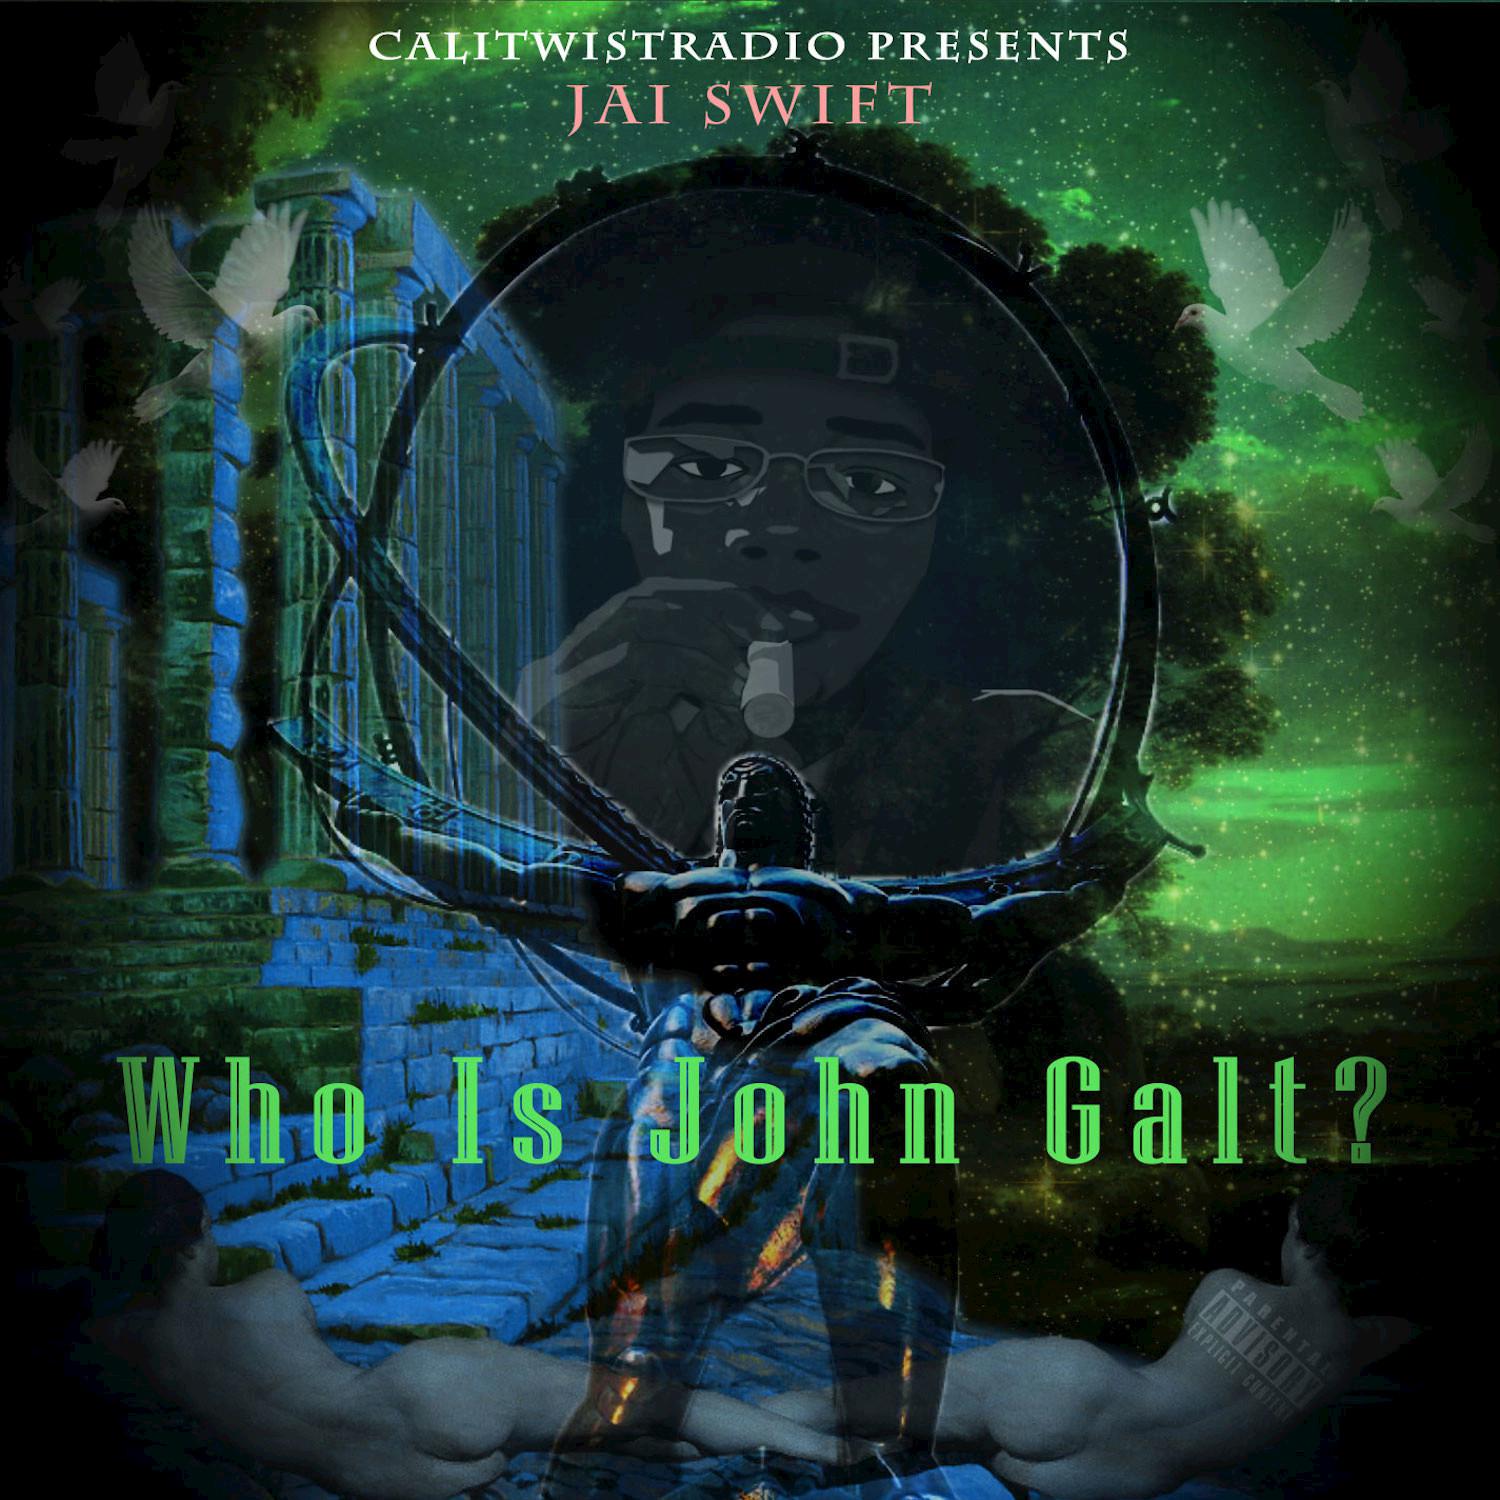 Who Is John Galt?